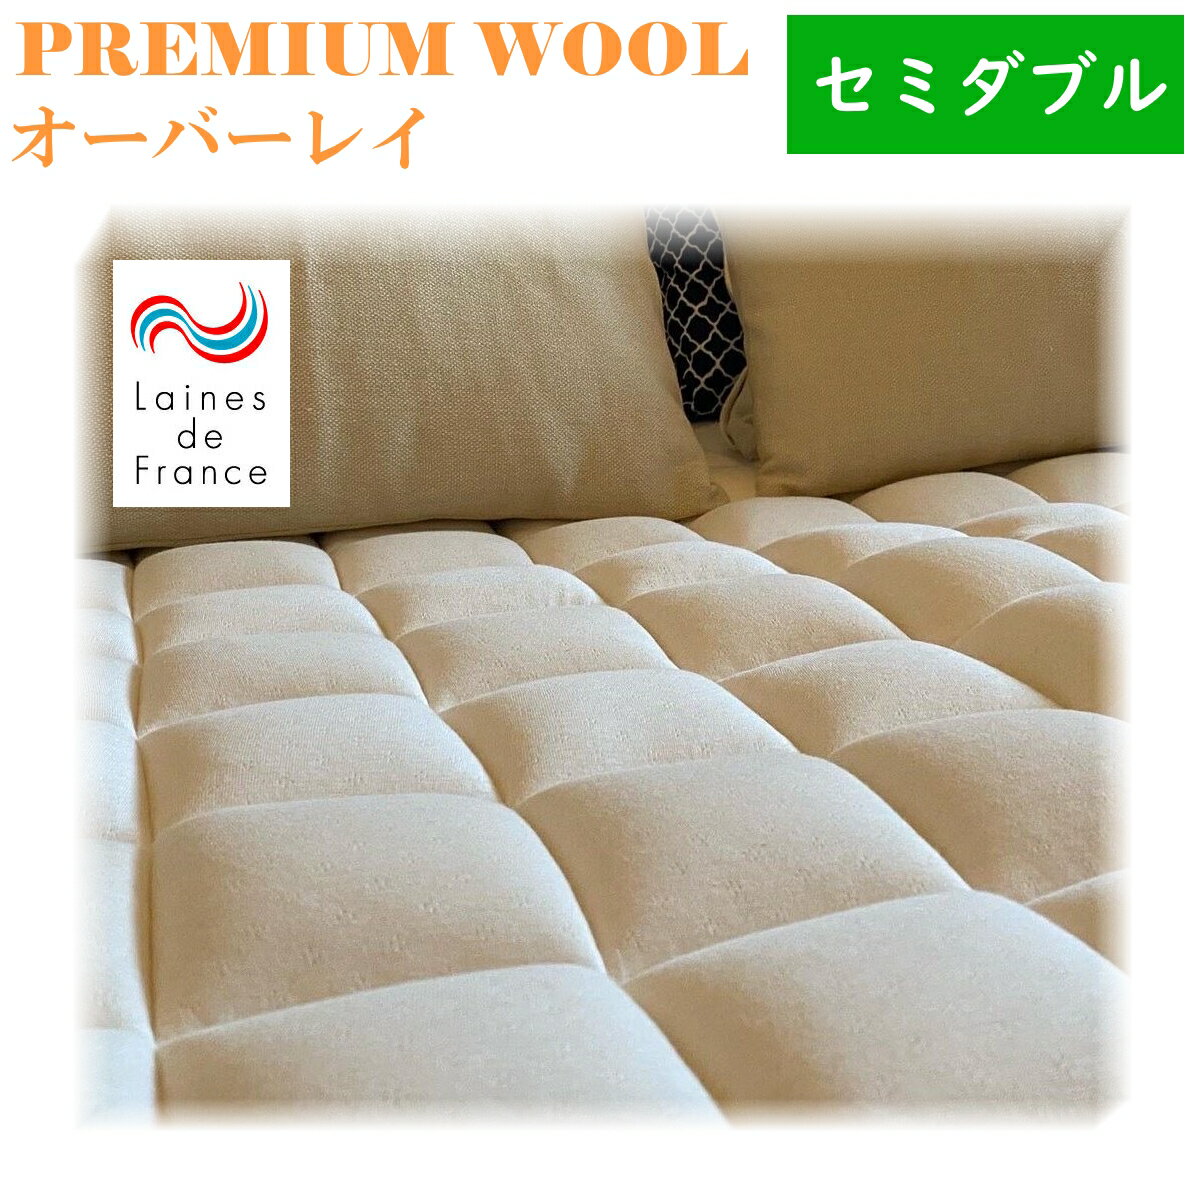 ポイント20倍 送料無料 premium_wool オーバーレイ セミダブルサイズ ウール100% 綿100% ラ・クーン種羊 寝床内気候 最適 吸湿性　天然の消臭効果 敷パッドに最適 レーヌマーク 日本製 メーカー 直送